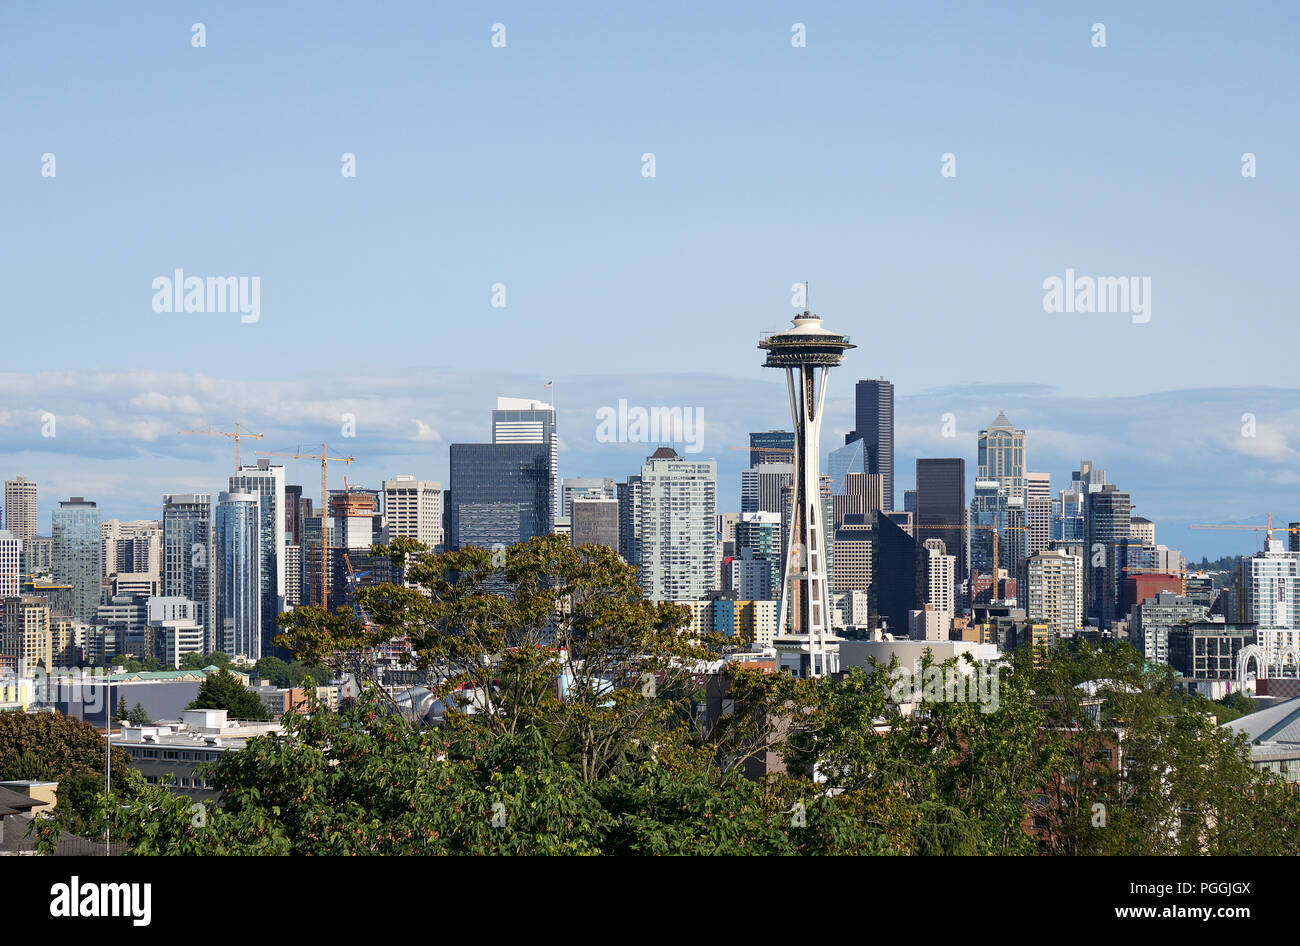 Seattle skyline seen from Kerry Park, Seattle, Washington, USA Stock Photo